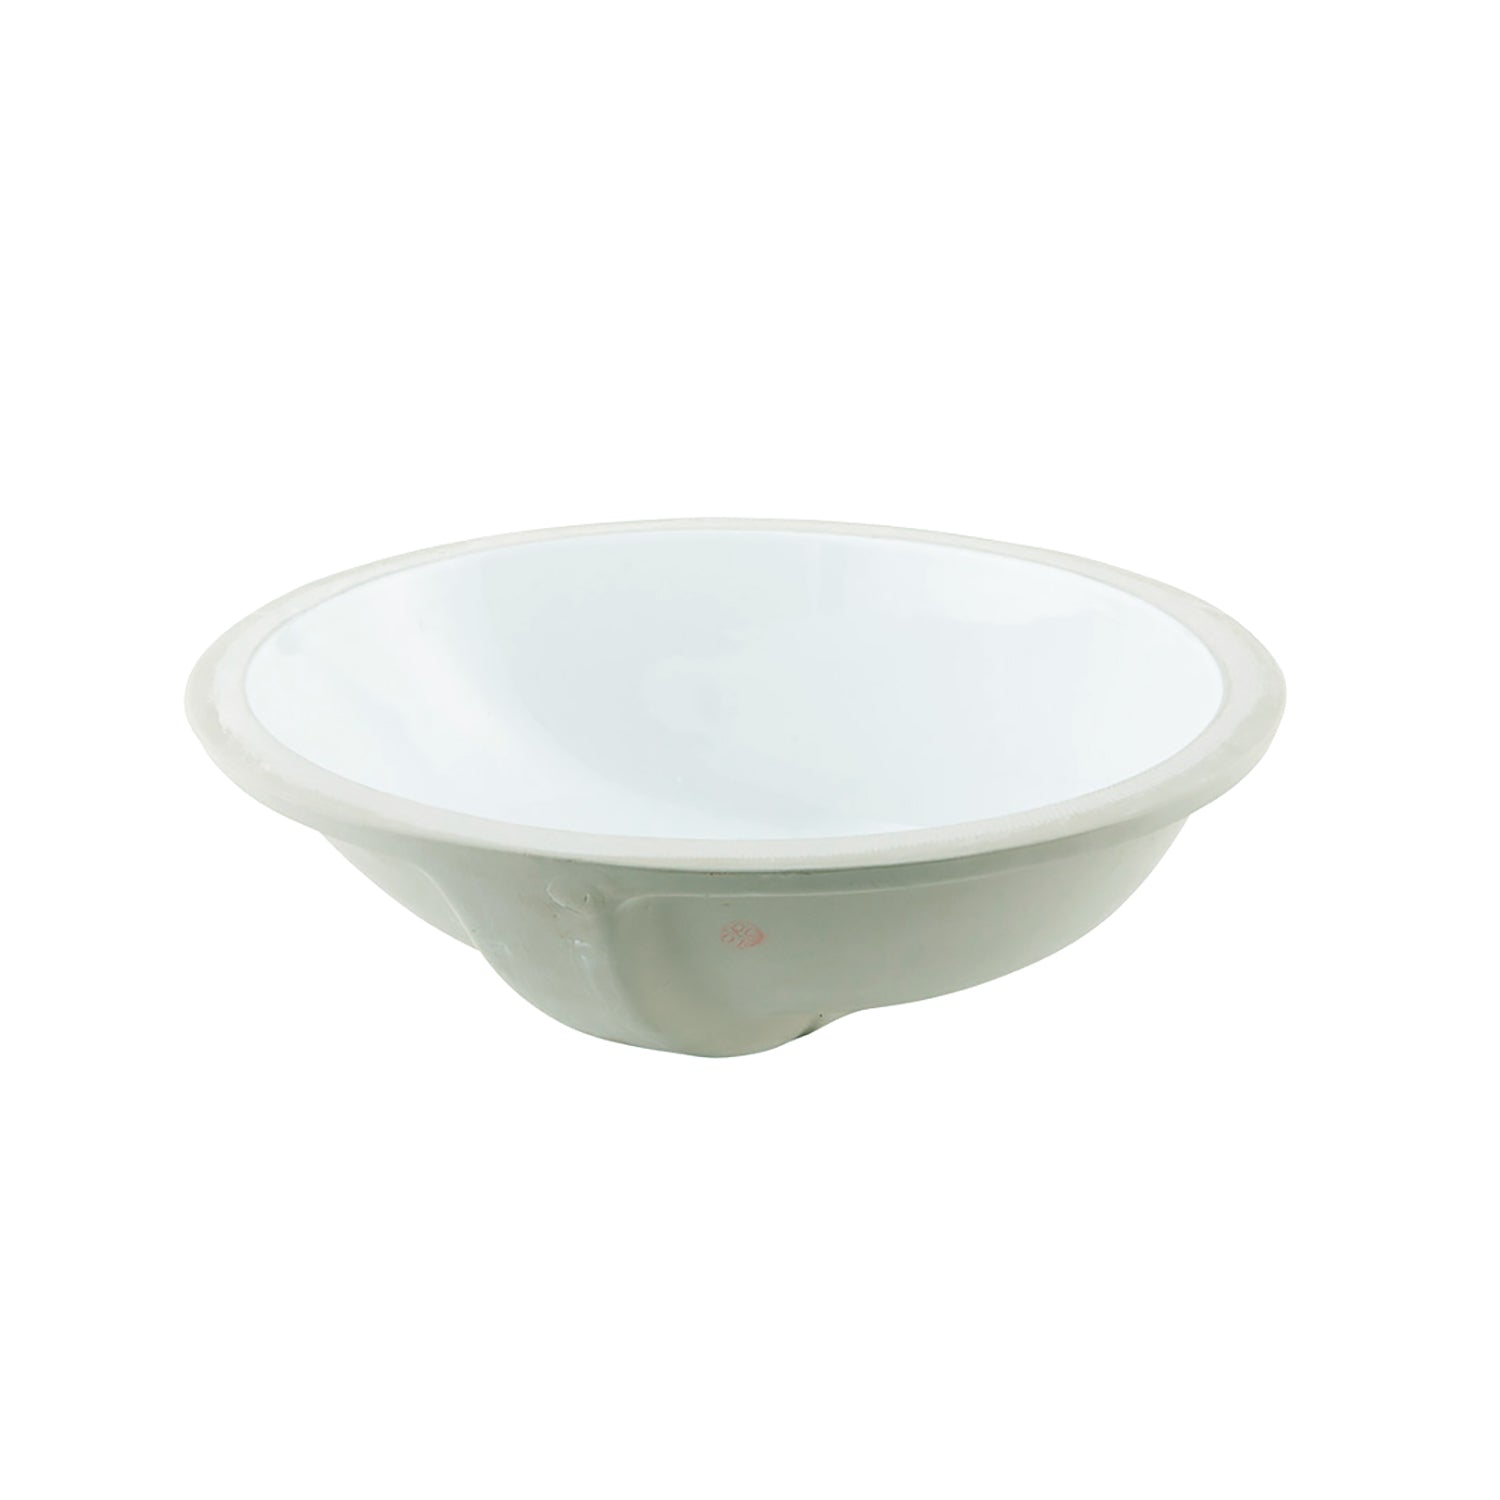 Lavabo de baño bajo encimera ovalado de cerámica DAX, acabado blanco, 19-1/2 x 16 x 8 pulgadas (BSN-200)